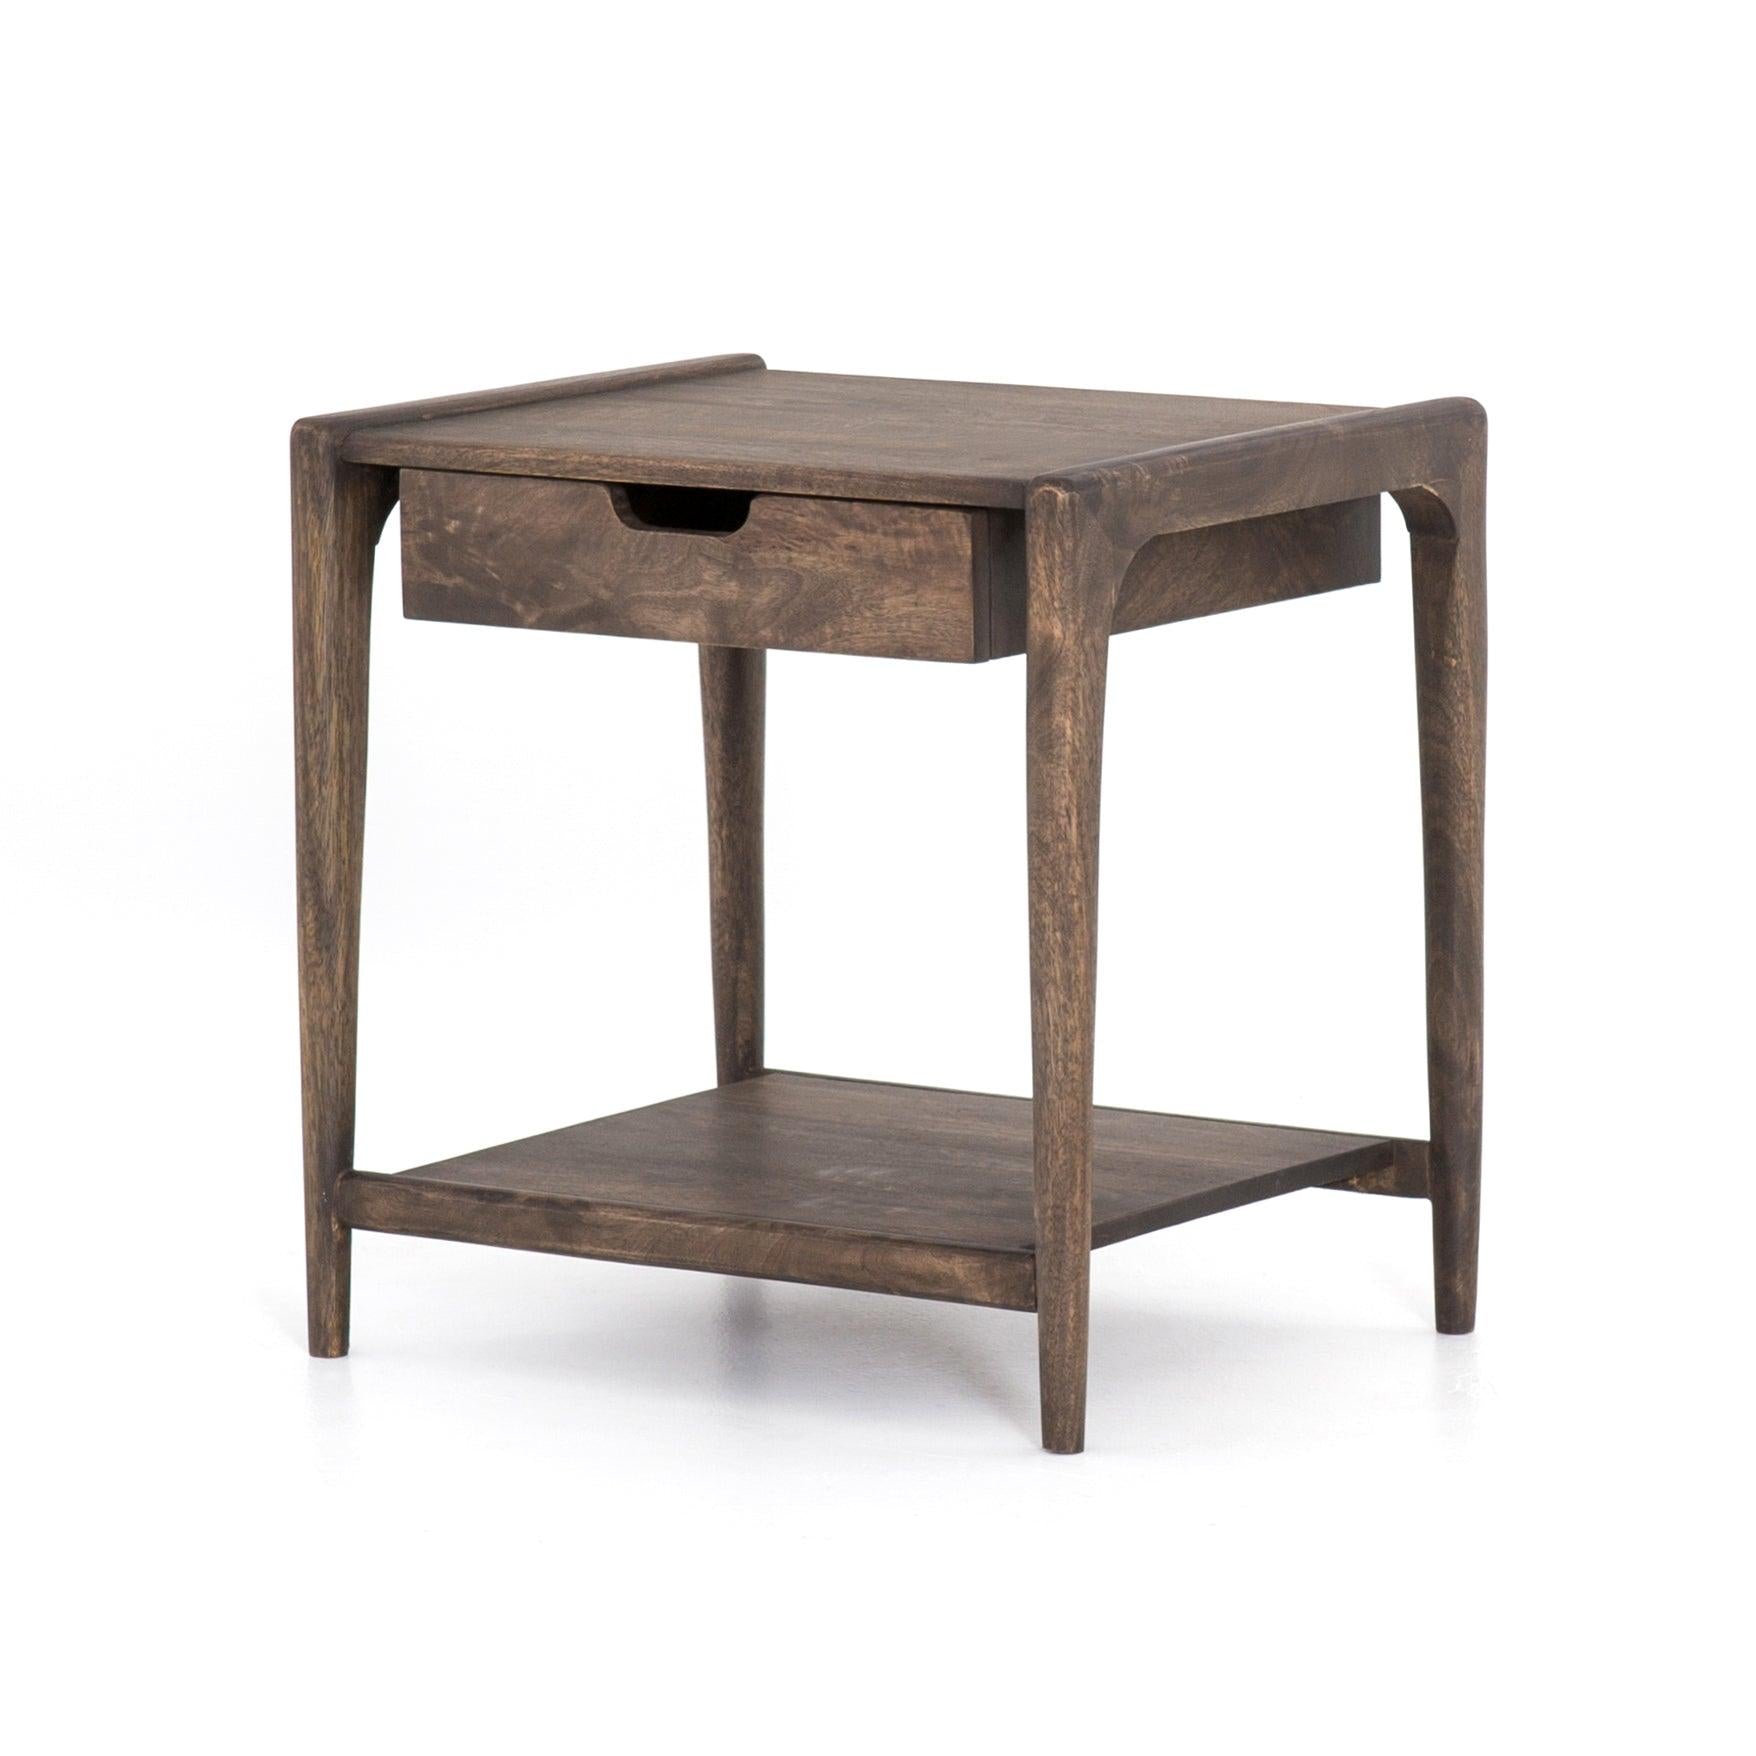 VALERIA END TABLE - Reimagine Designs - new, Nightstand, nightstands, side table, Side Tables